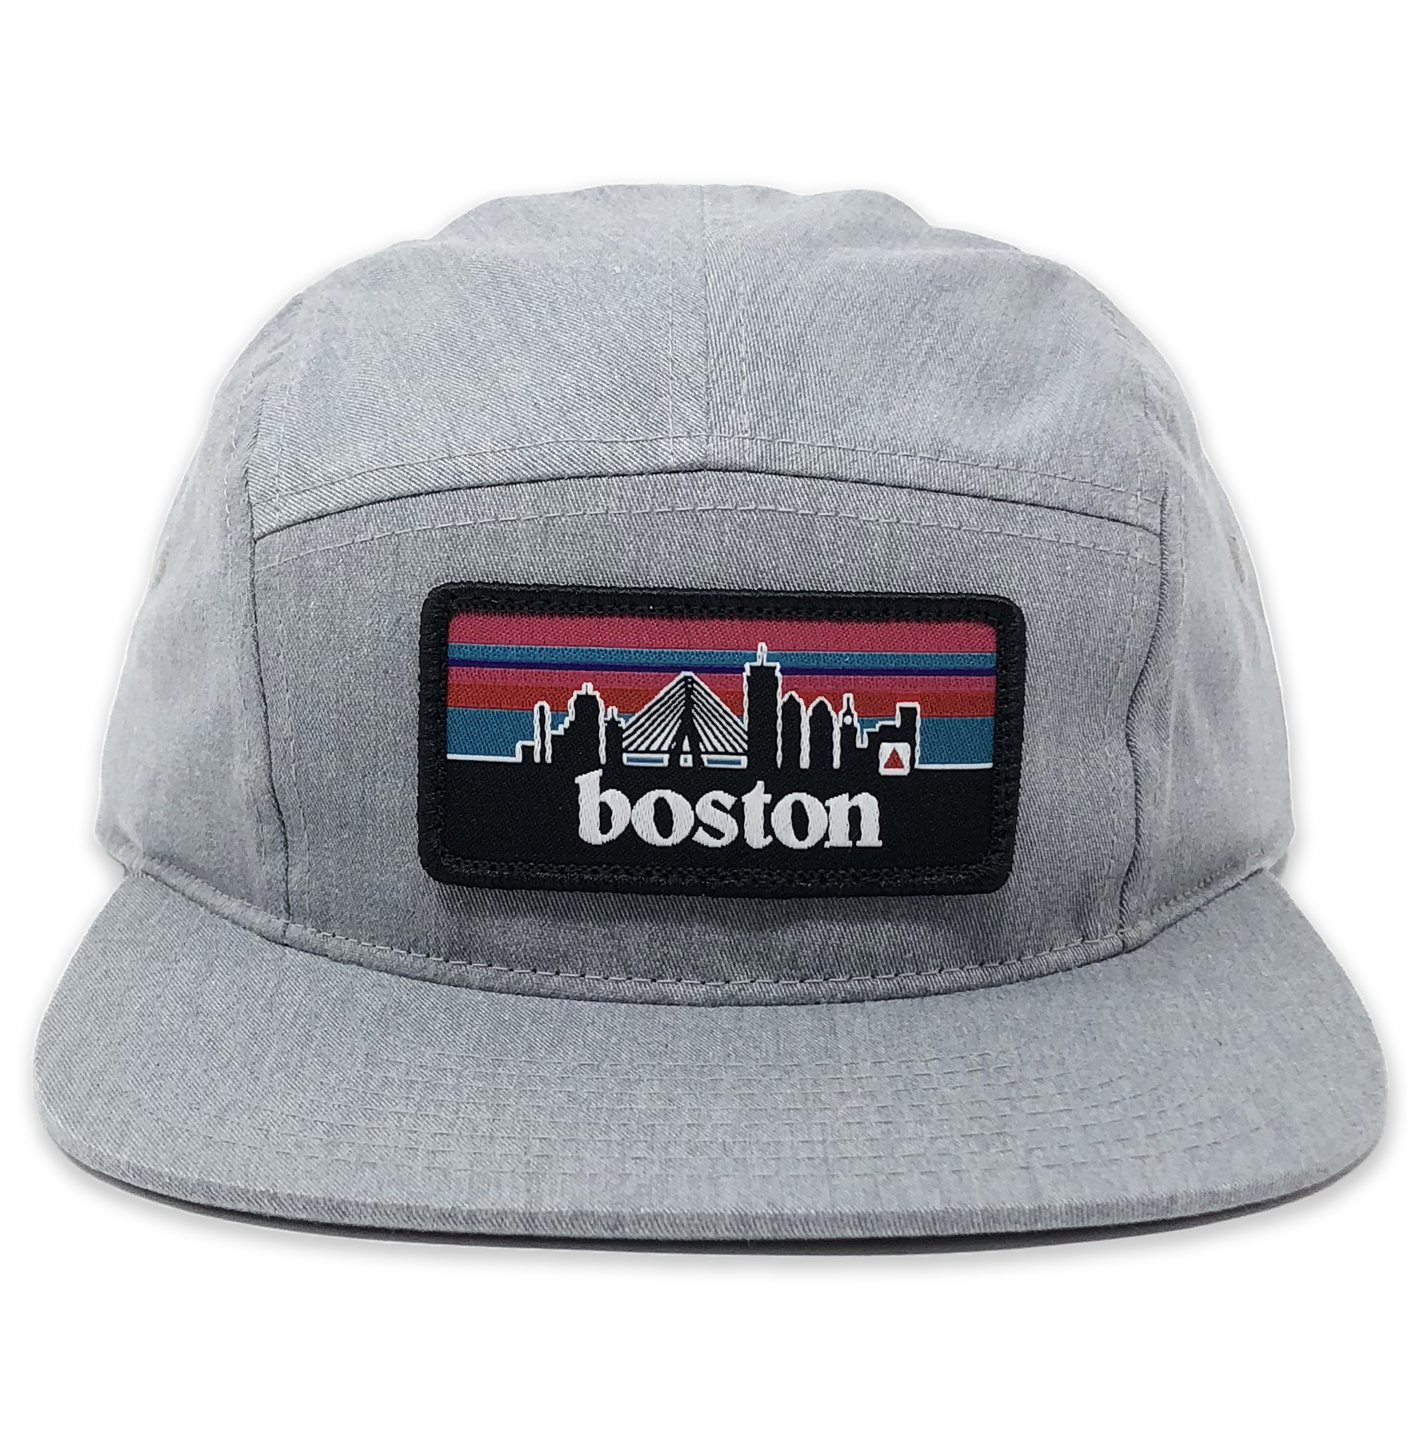 Boston Snapback Company | Bostonia Five Panel (gray)